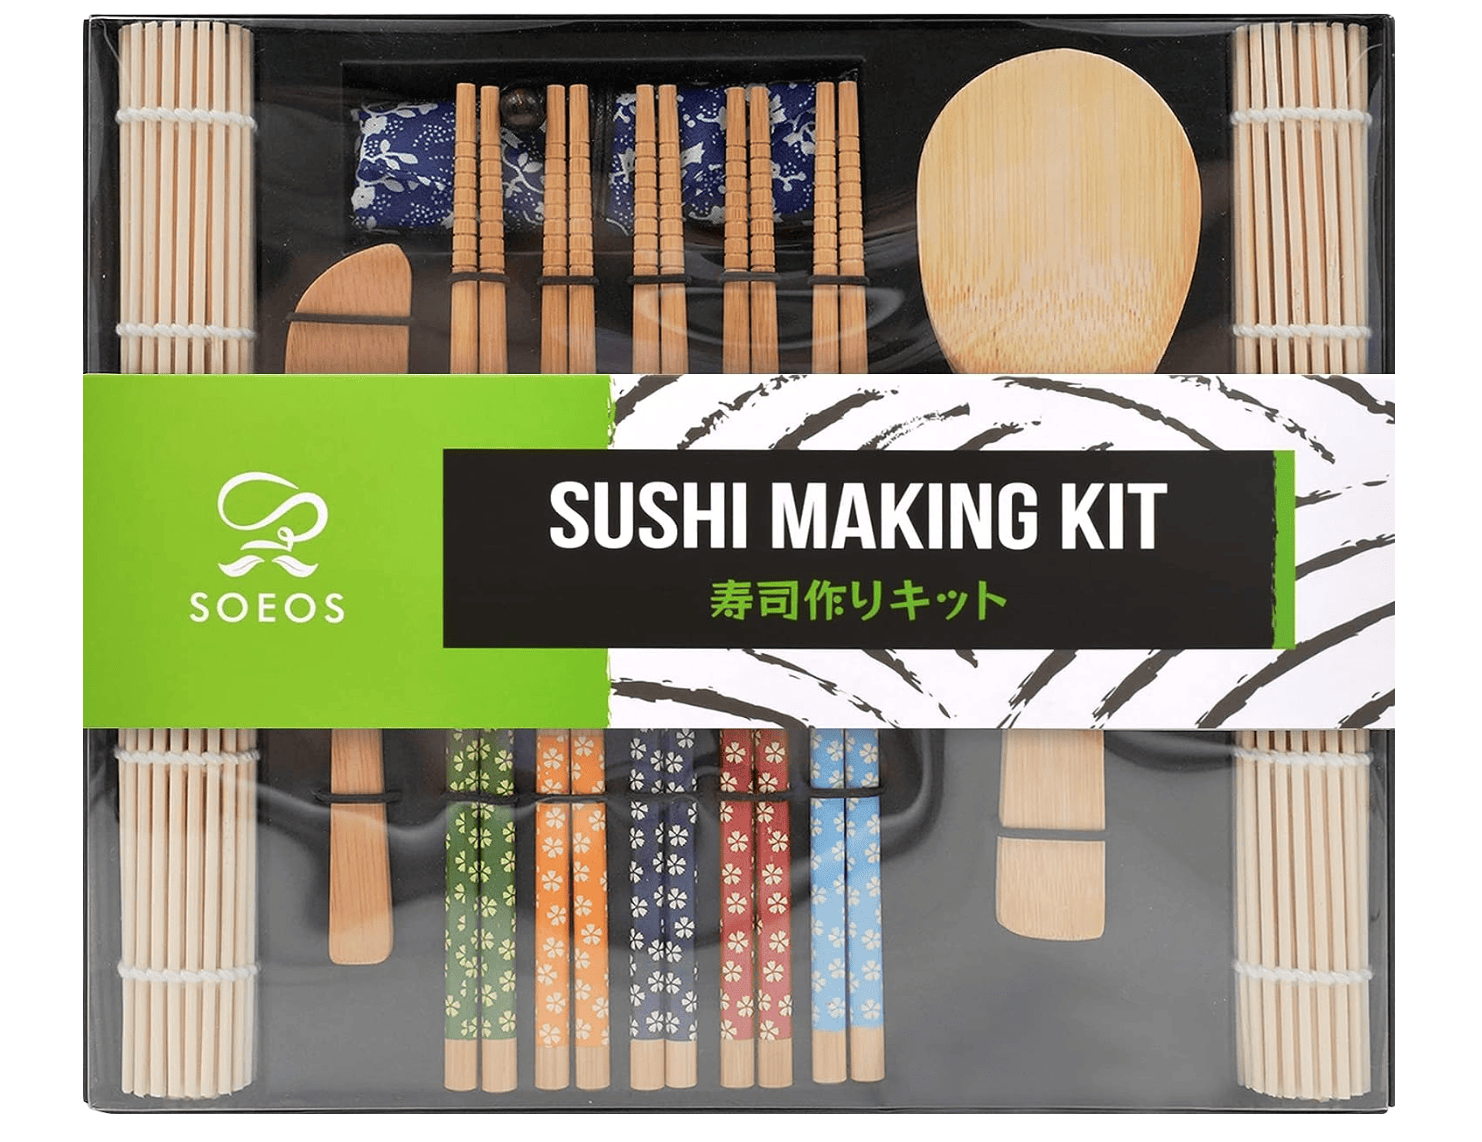 Helen's Asian Kitchen Sushi Making Kit